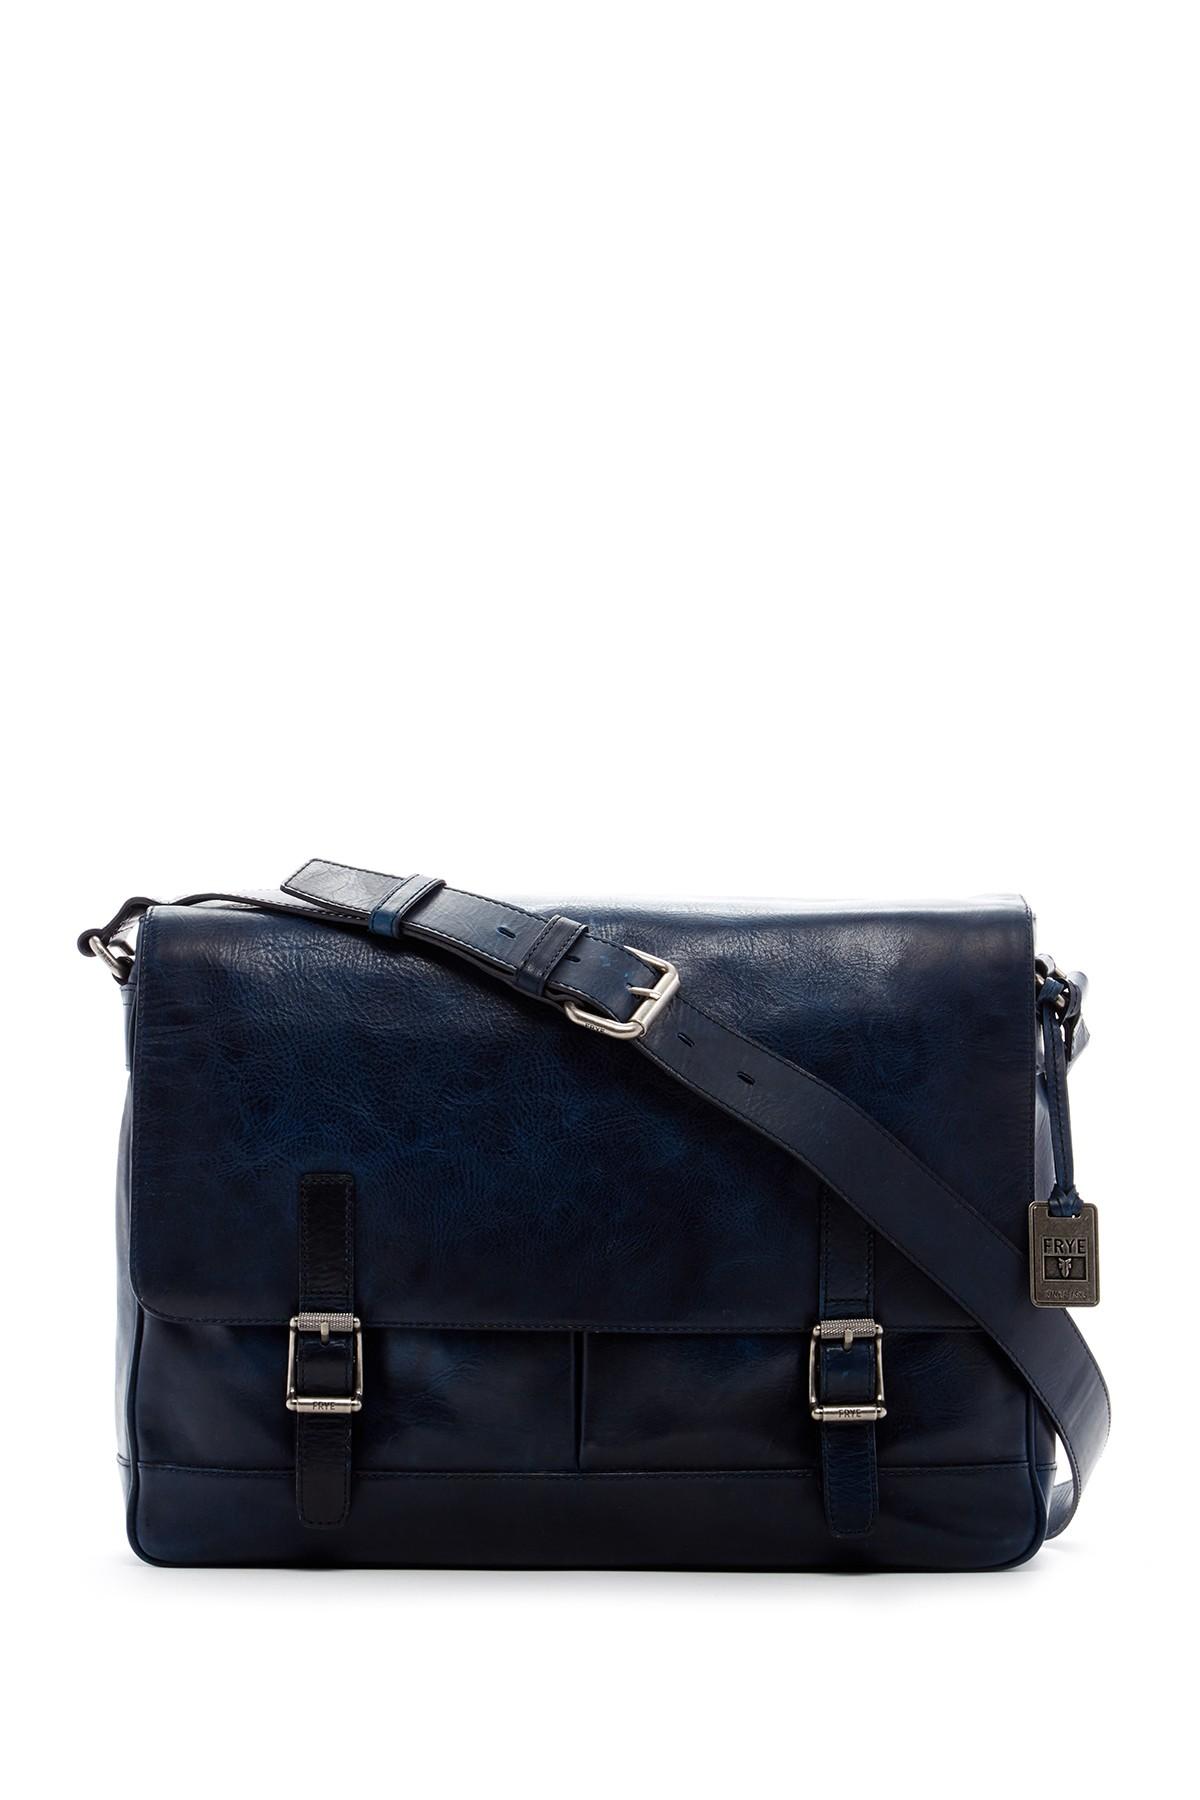 Frye Oliver Leather Messenger Bag in Blue for Men | Lyst